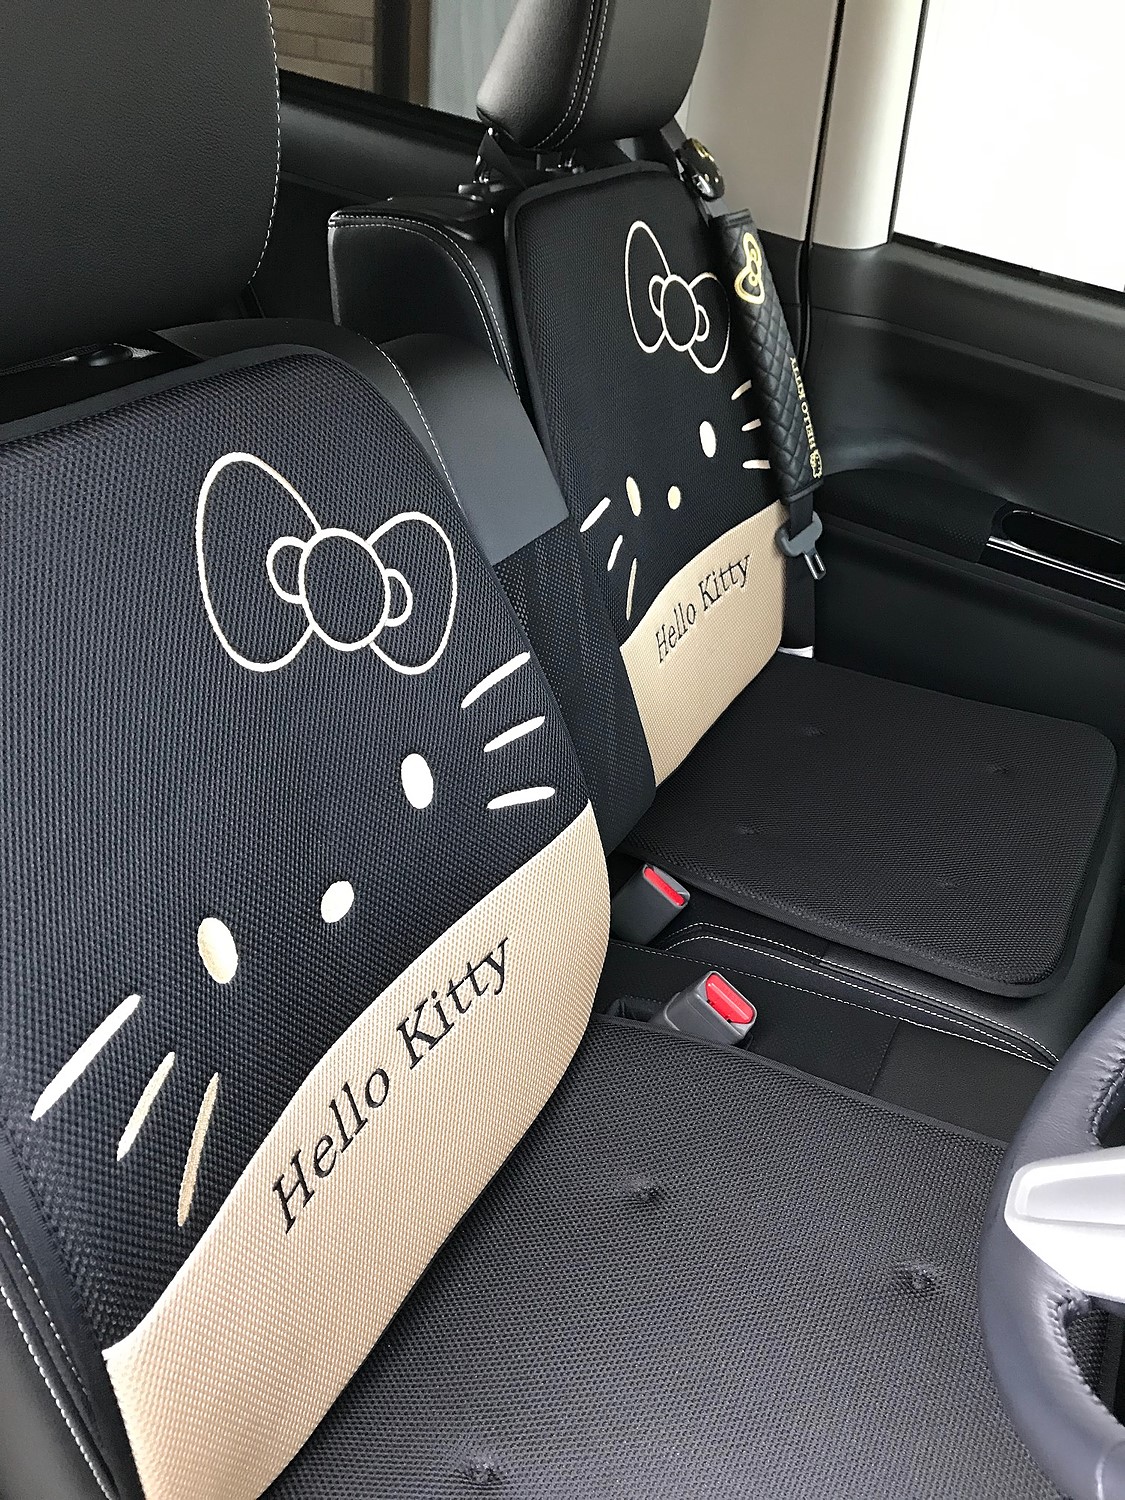 楽天市場 ハローキティ カーシートクッション メッシュl型 2枚セット ブラック サンリオオンラインショップ みんなのレビュー 口コミ